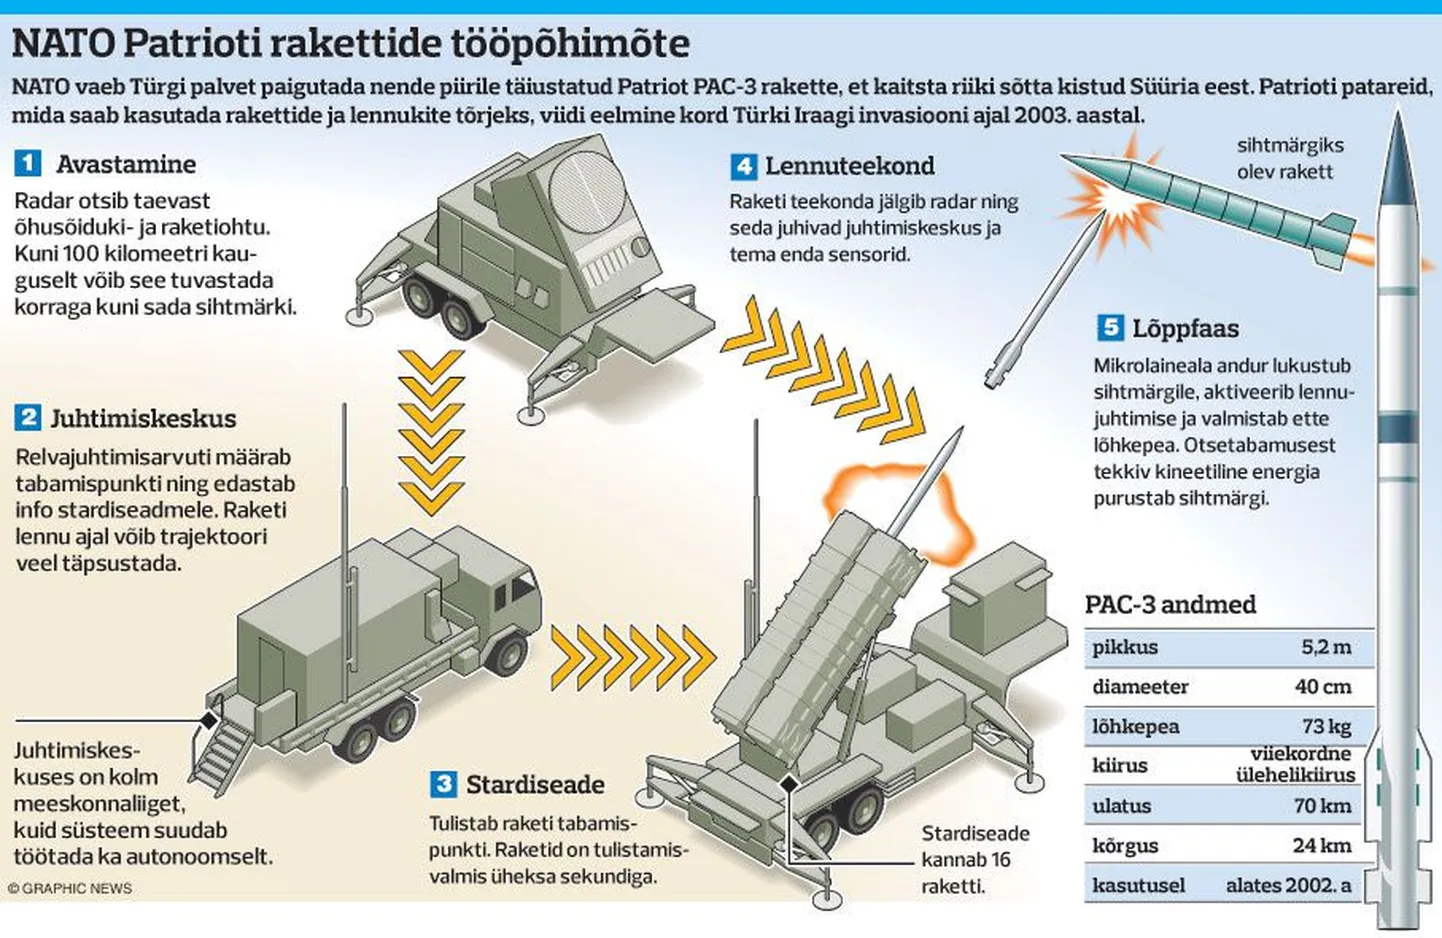 NATO Patrioti rakettide tööpõhimõte.